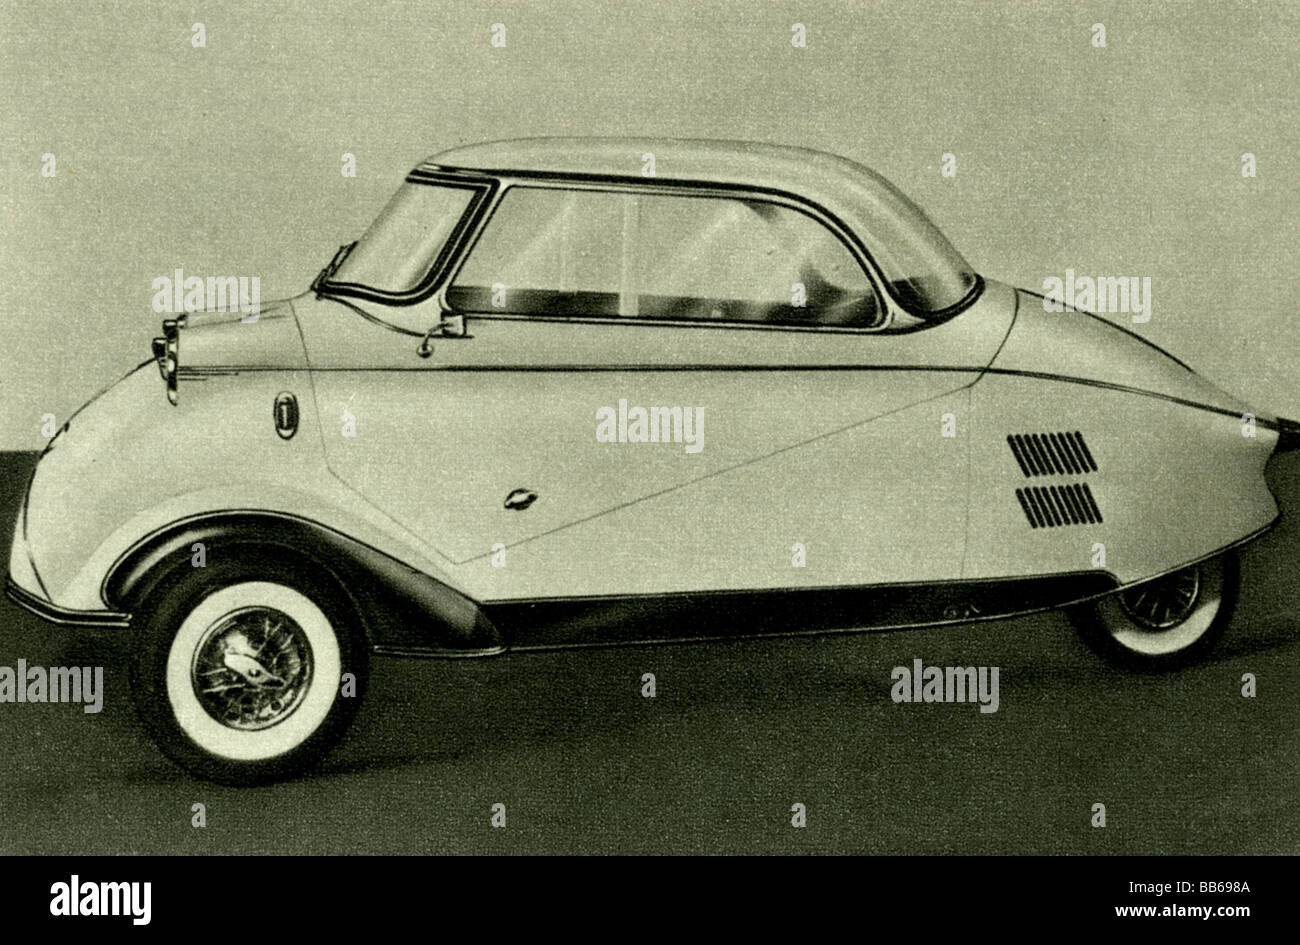 transport / transportation, car Messerschmitt Kabinenroller, 1954, Stock Photo